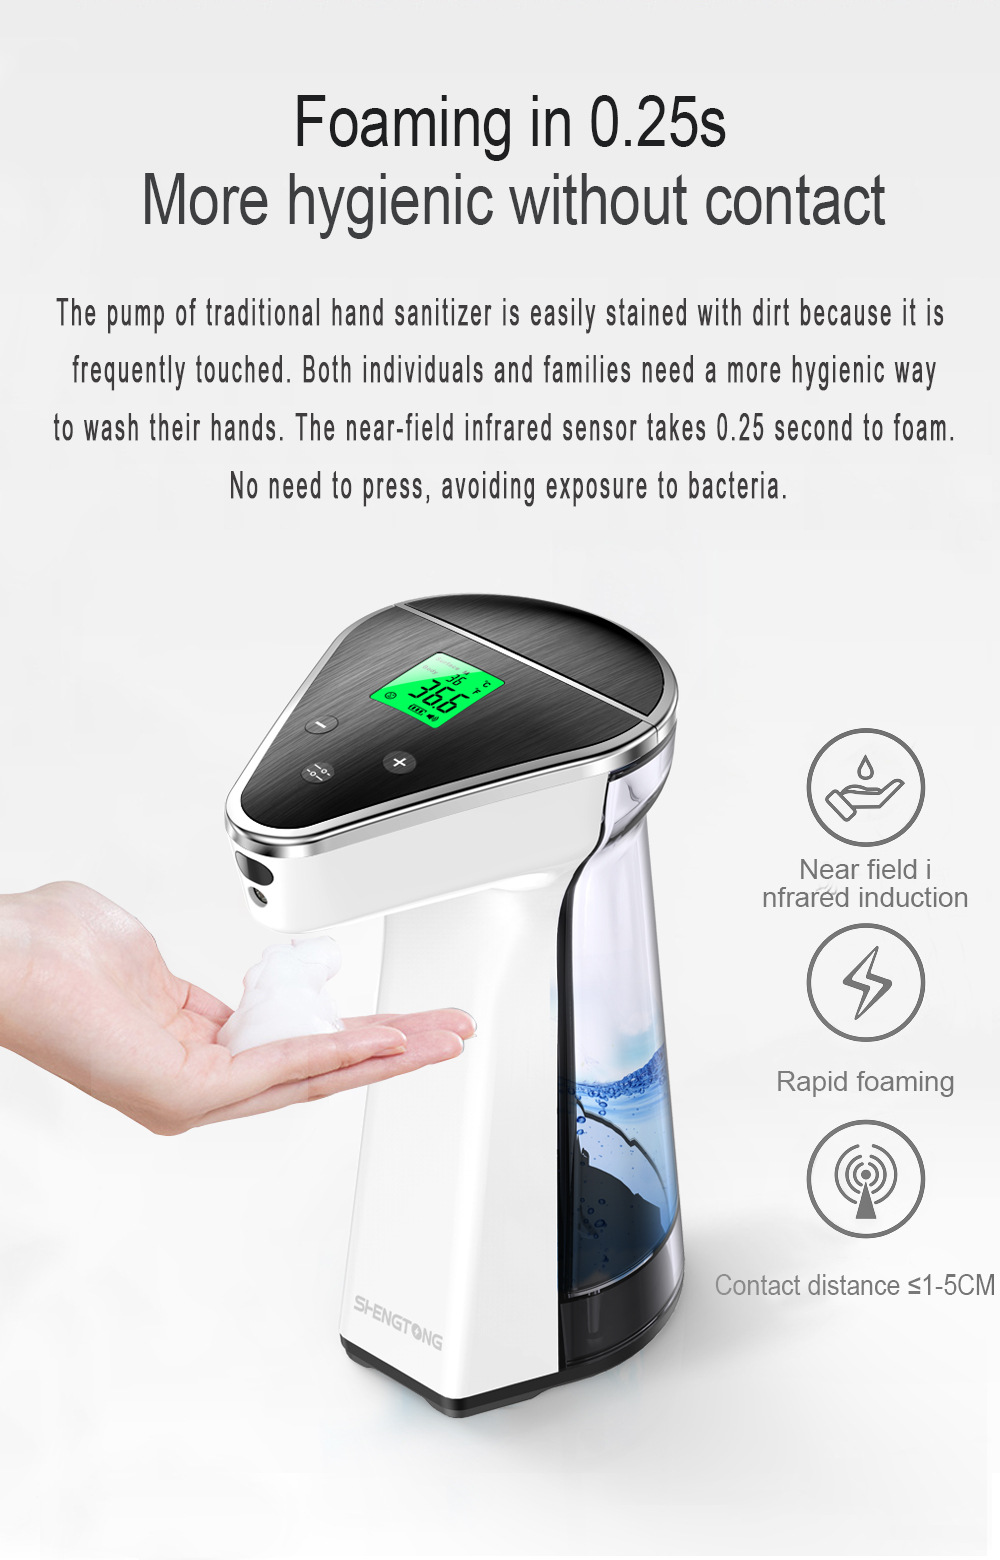 洗手液机器中文详情图-英语_05.jpg